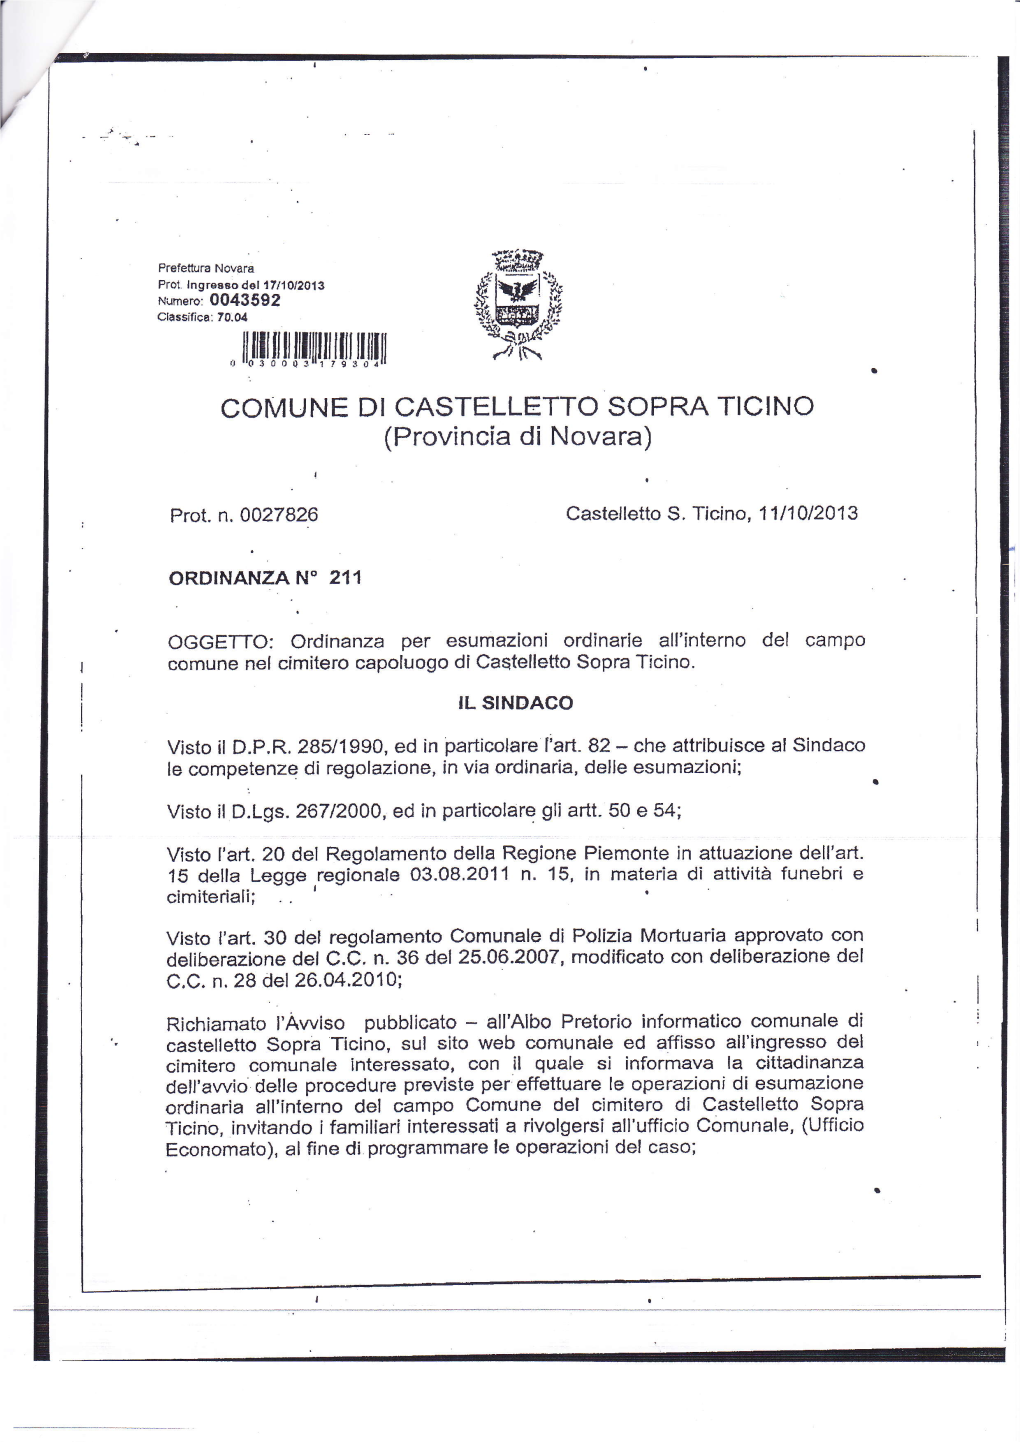 COMUNE DI CASTELLETTO SOPRA TICINO (Provincia Di Novara)